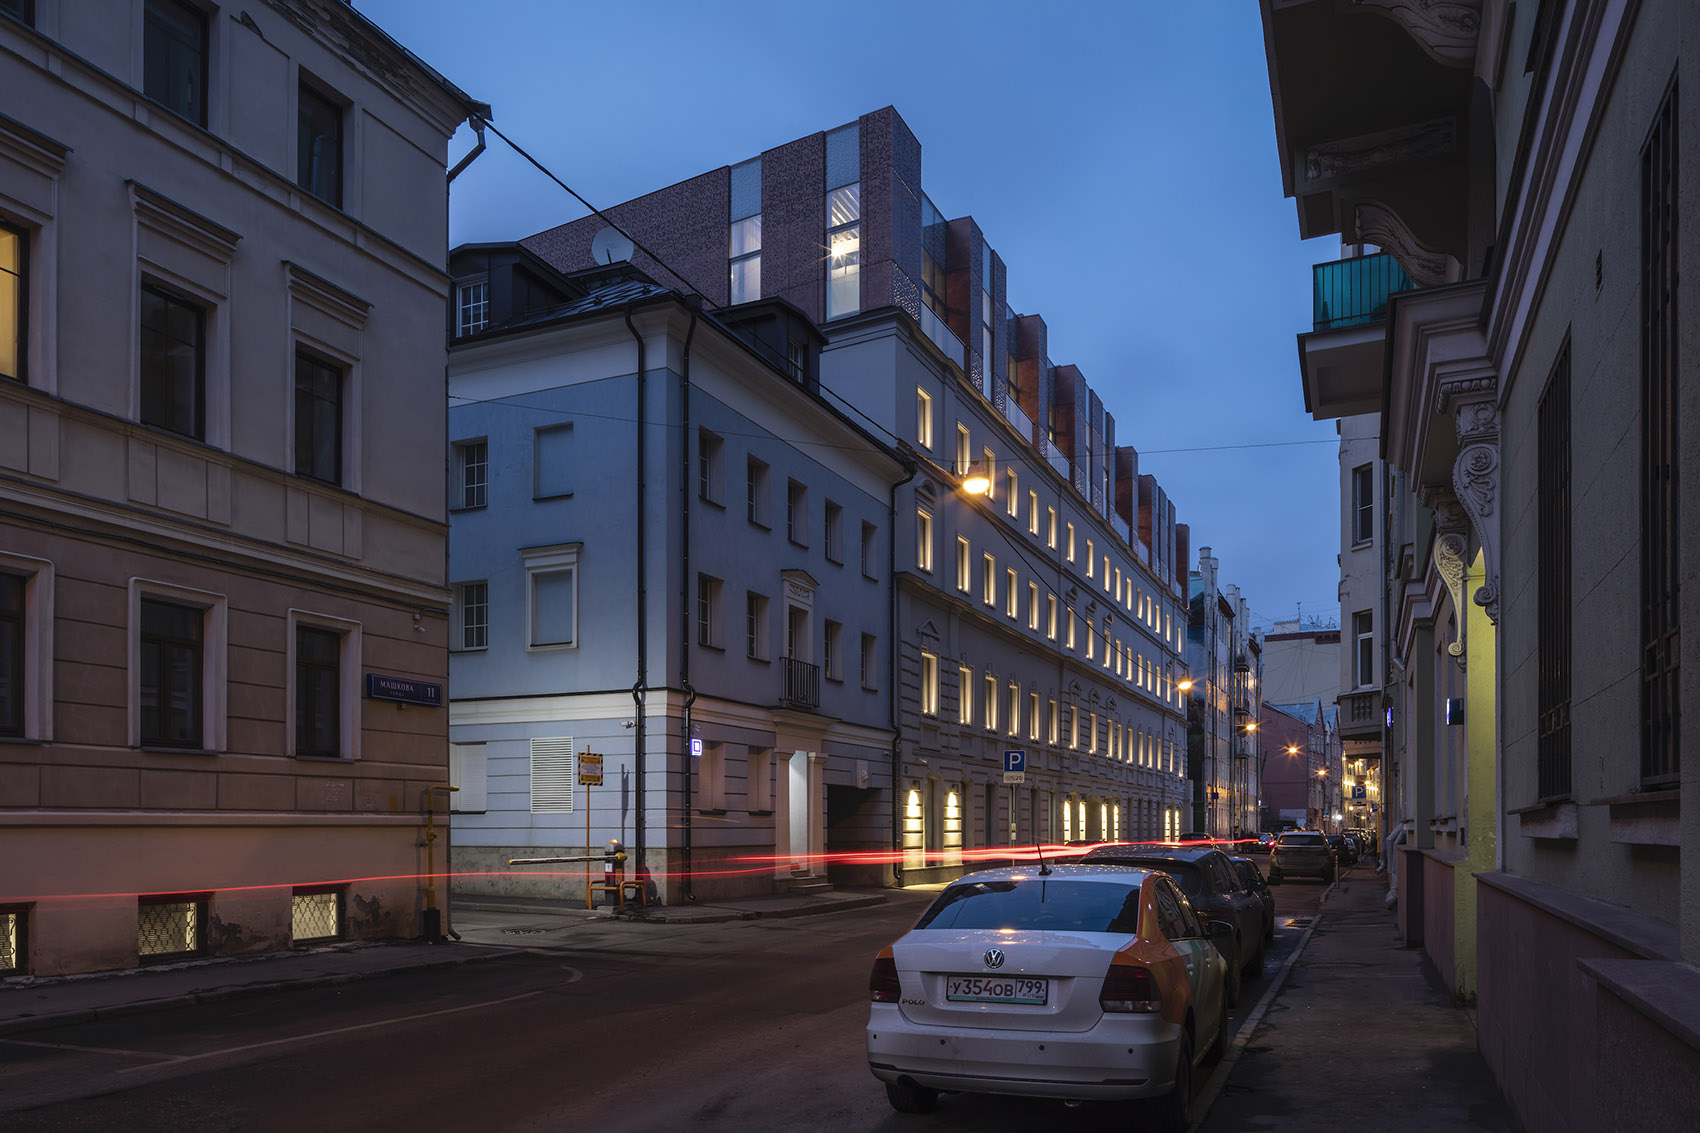 Sovremennik公寓楼，莫斯科/新古典主义公寓楼的修复和现代扩建-66